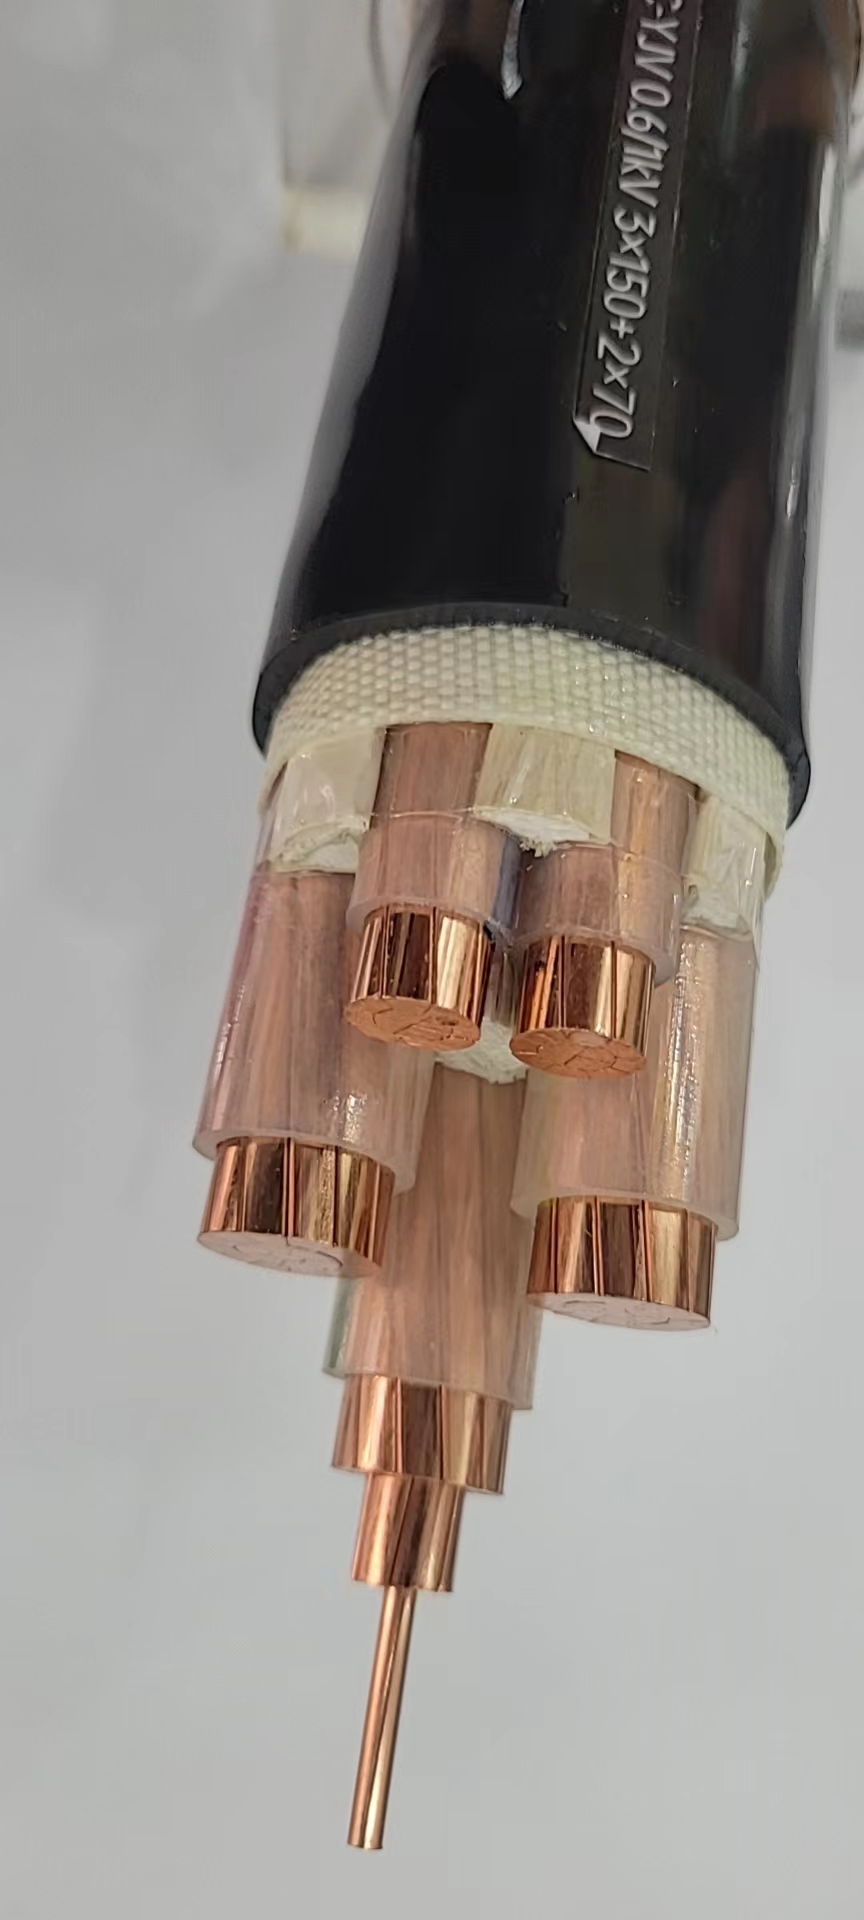 沈阳津达线缆 控制电缆 矿用绝缘电缆 特种电缆 特种线缆